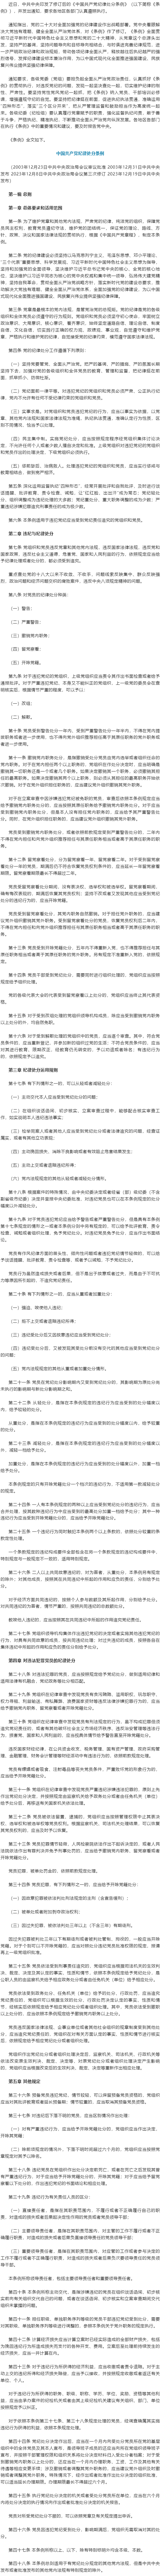 中共中央印发《中国共产党纪律处分条例》1.png